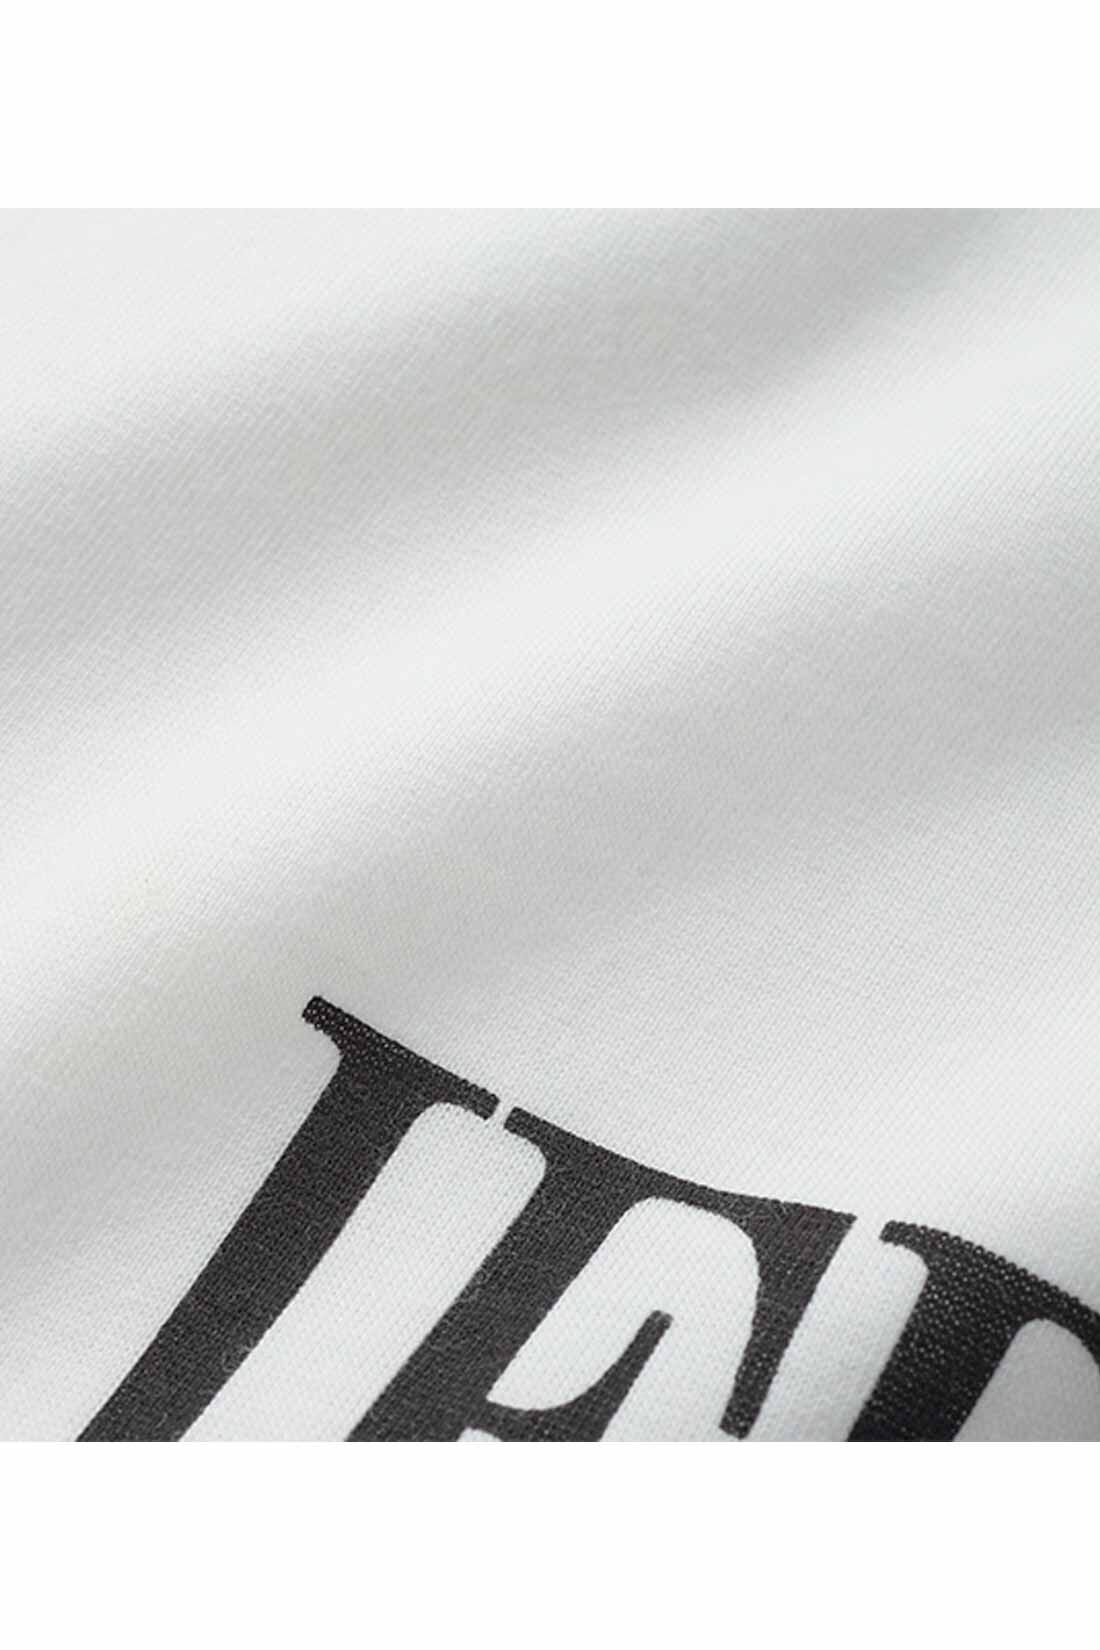 IEDIT[イディット]　こなれコーデがかなう ツイードベストと長袖ロゴTシャツのセット|ロンTは扱いやすい綿ポリエステルの天じくカットソーに、グラフィカルなIEDITのロゴをプリント。